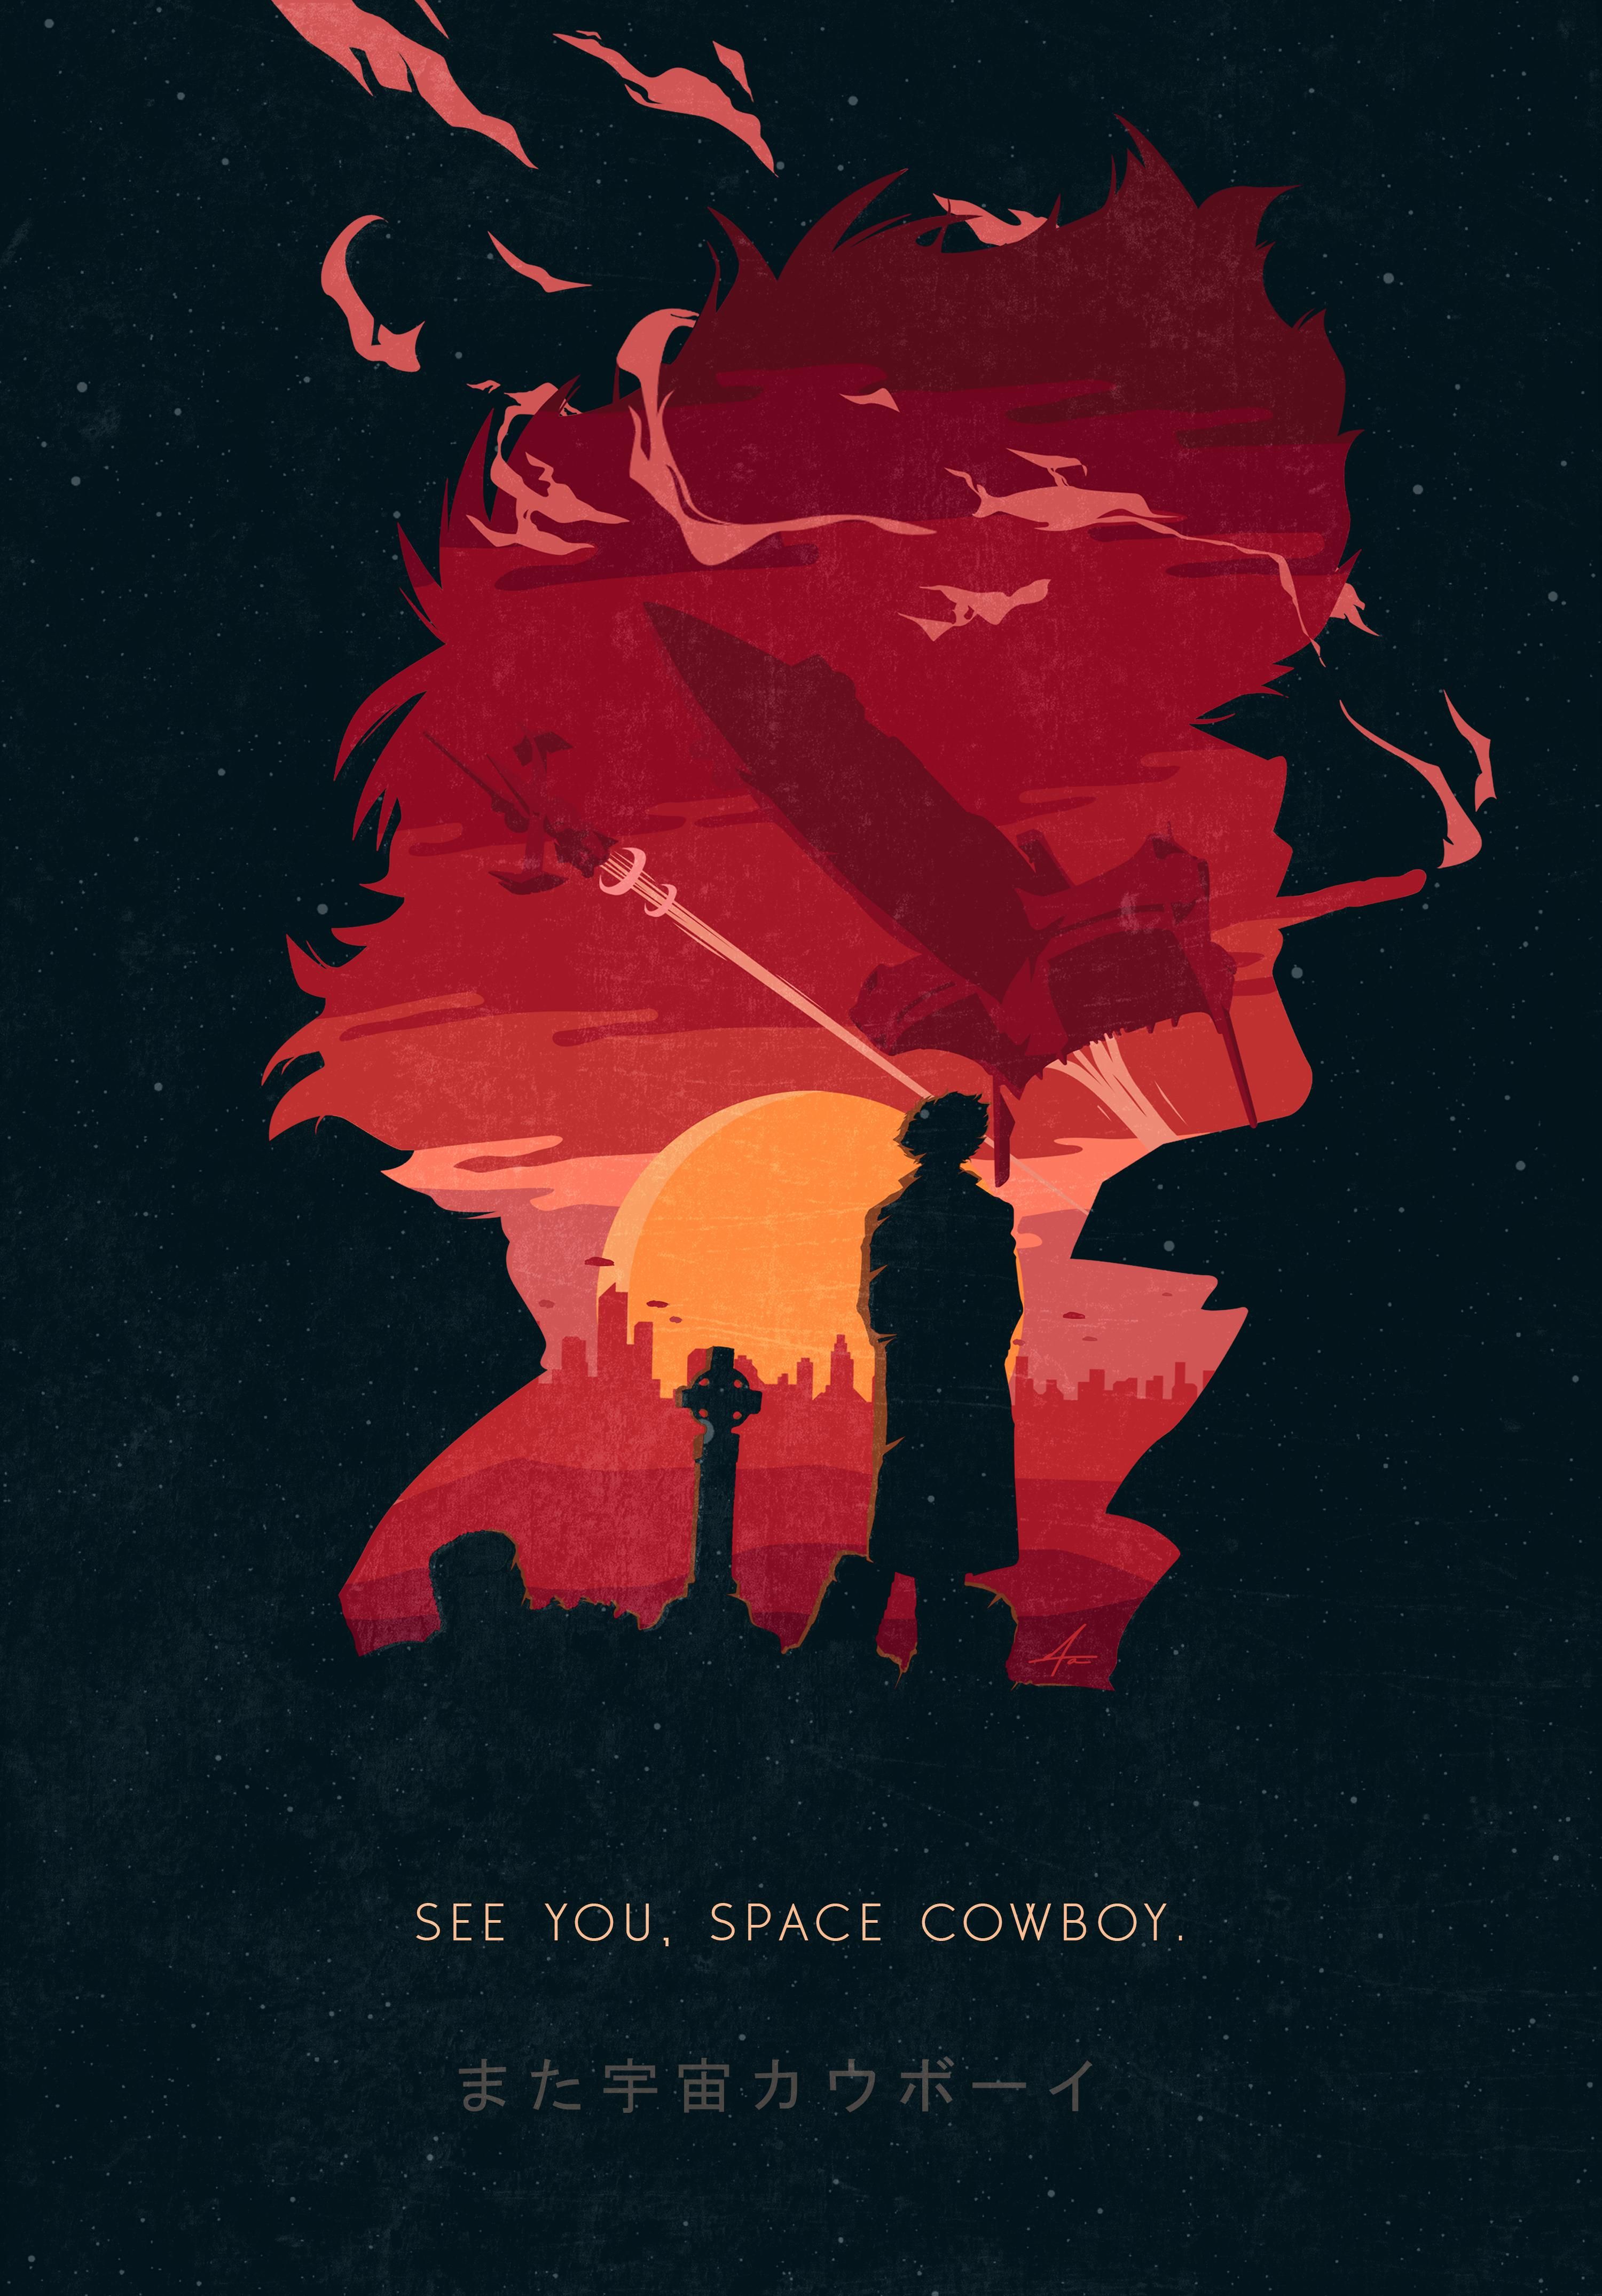 Cowboy Bebop Hd Netflix Poster Wallpapers